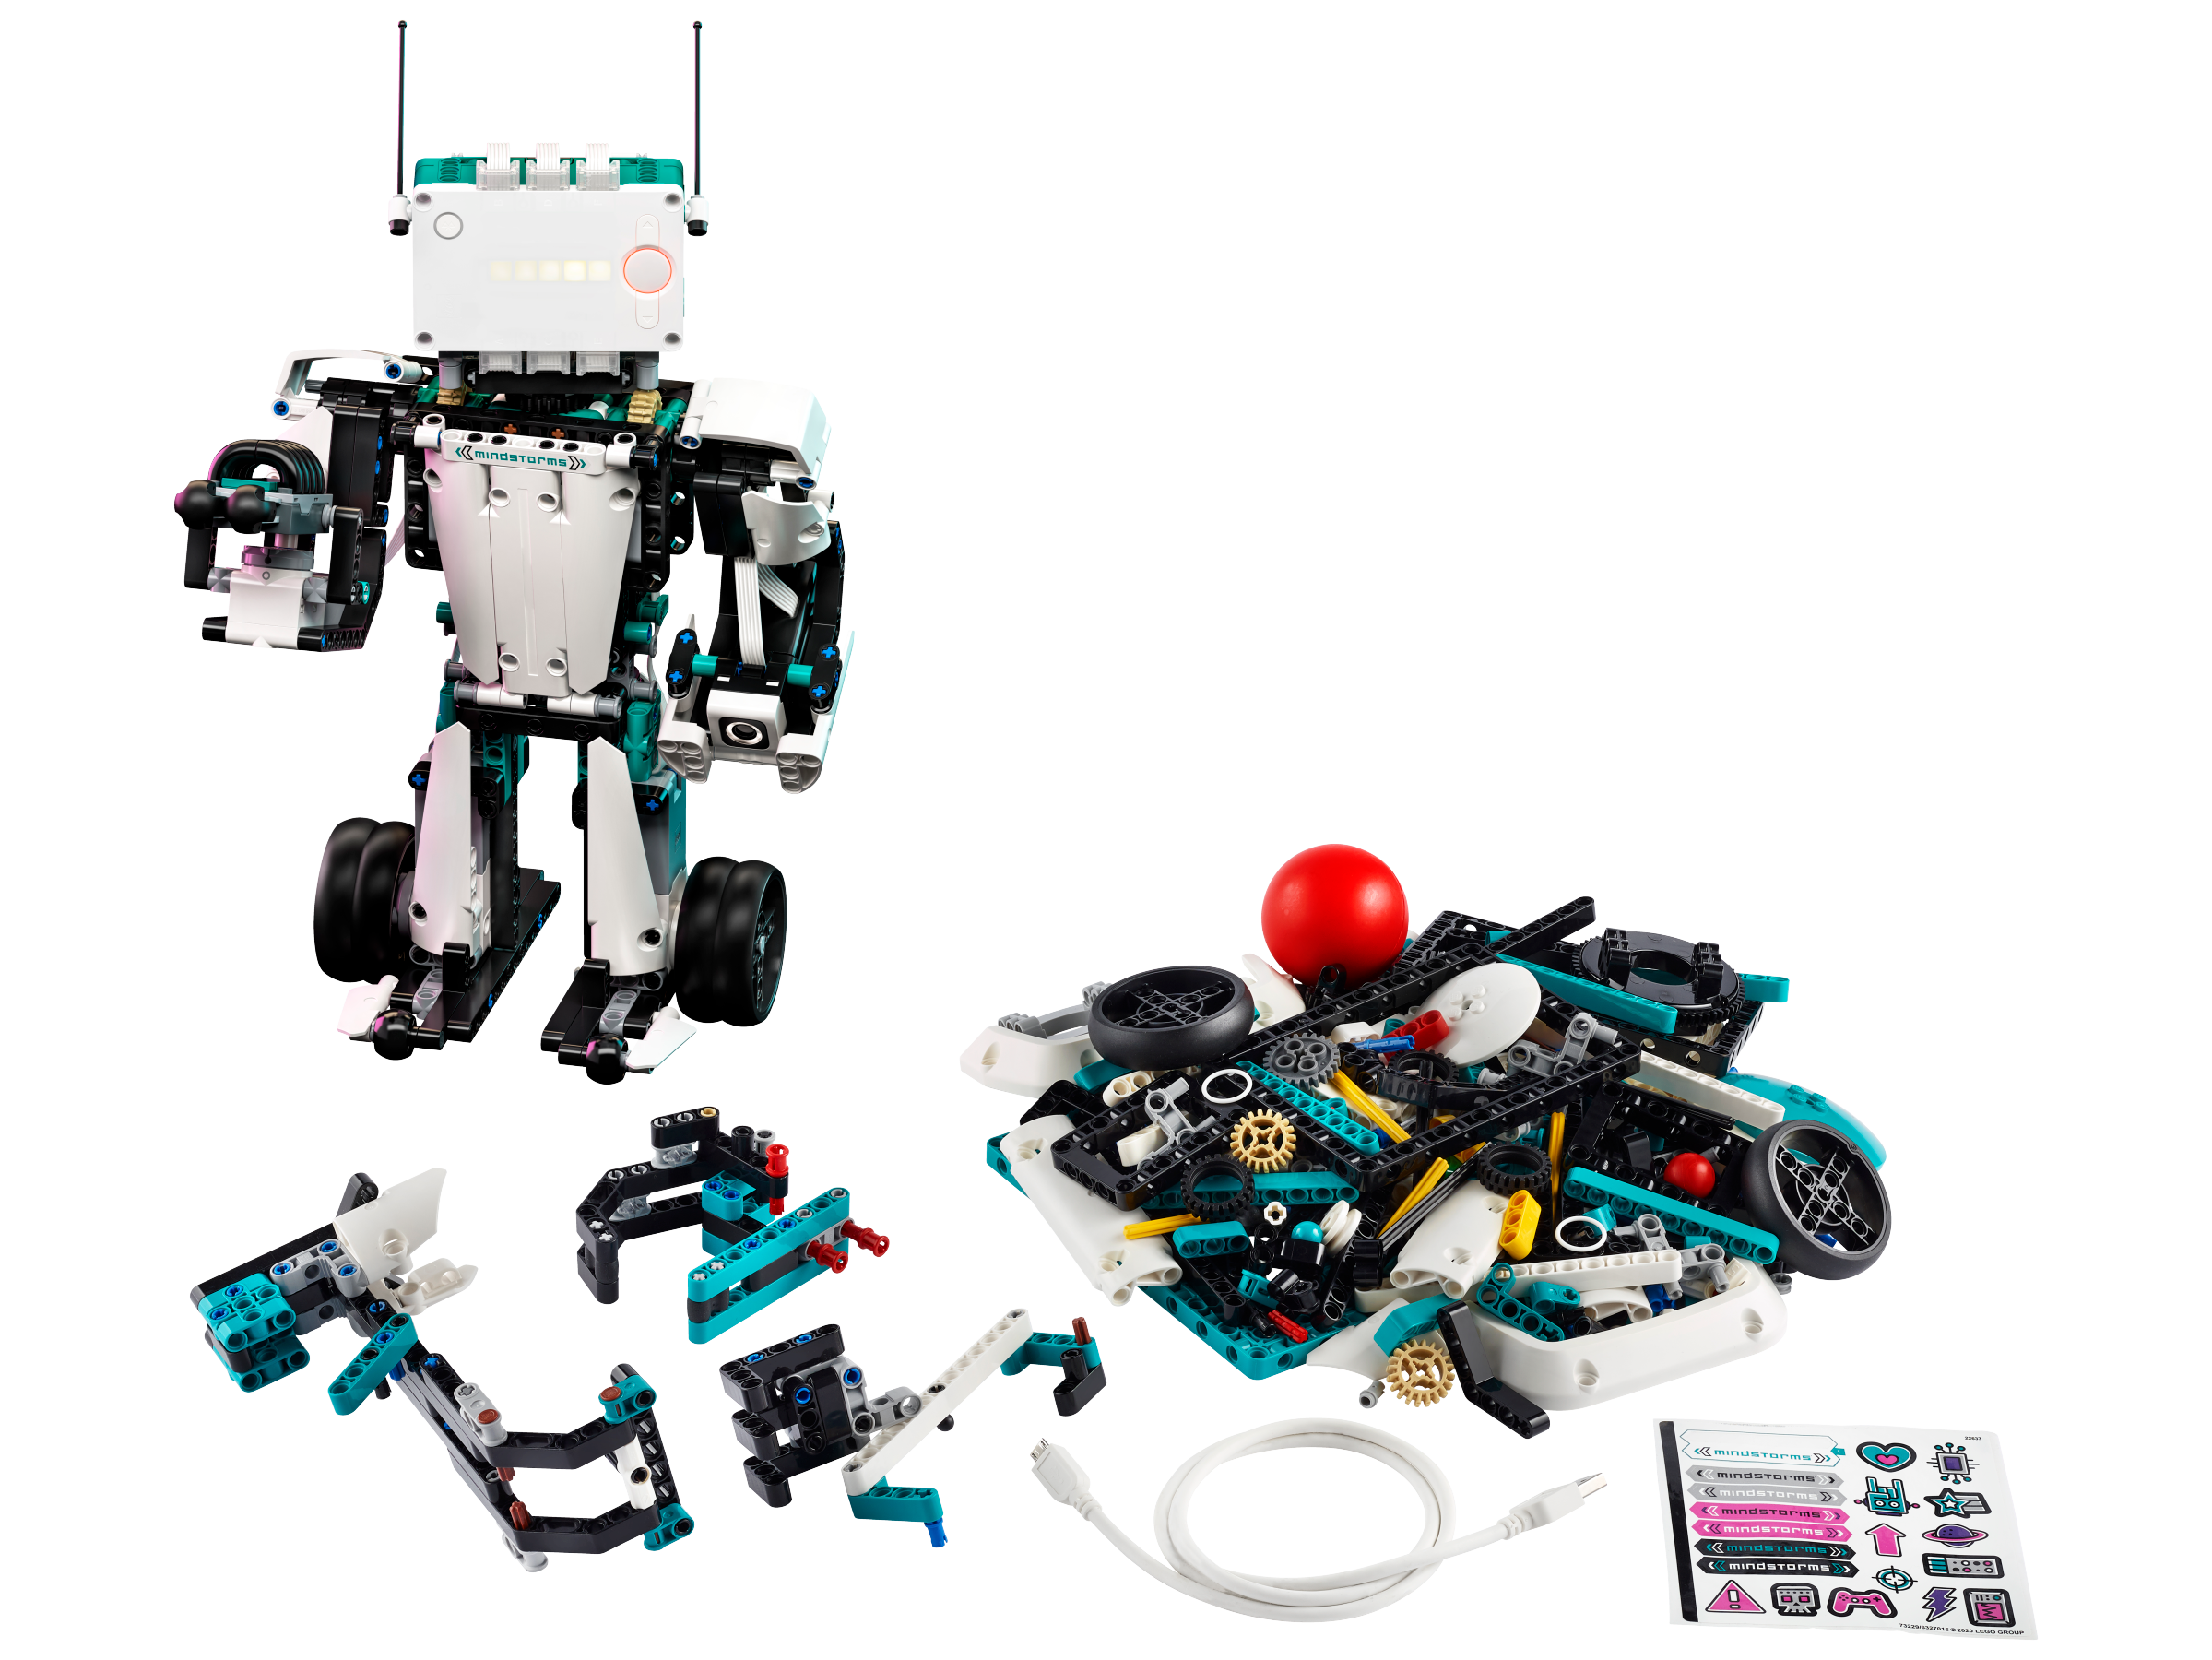 LEGO® MINDSTORMS® 51515 Roboter-Erfinder